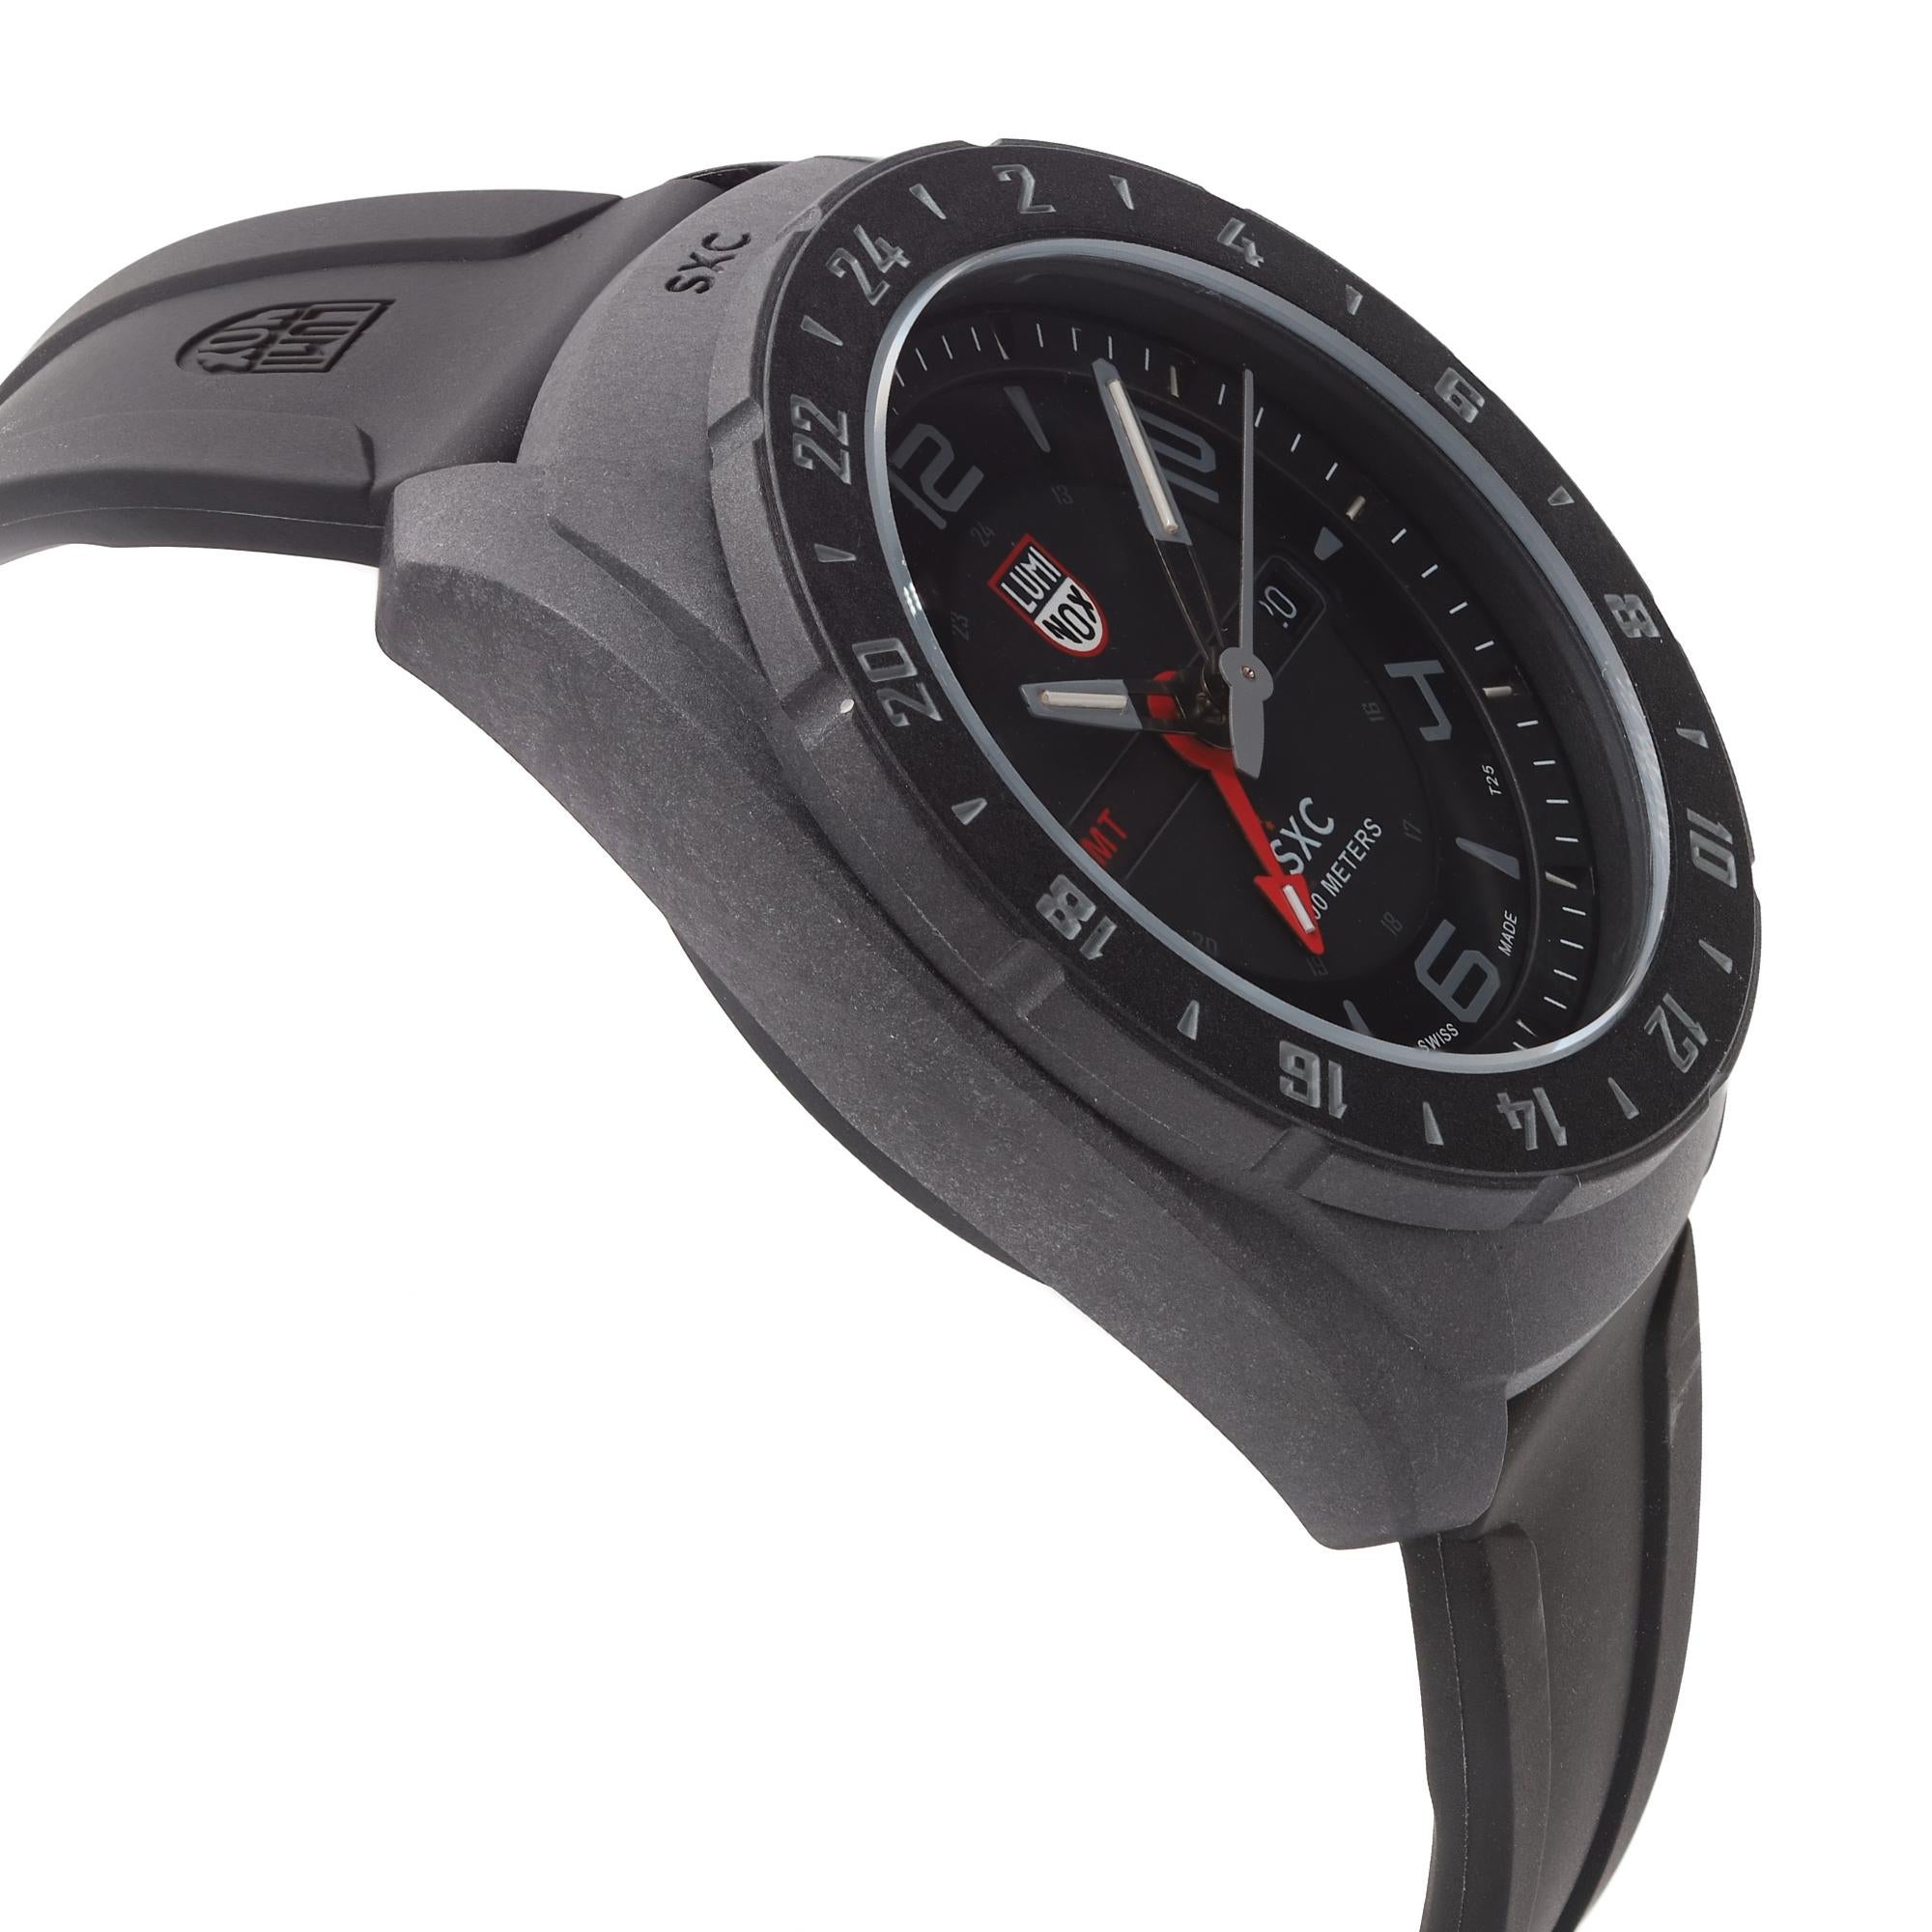 carbon fiber watch